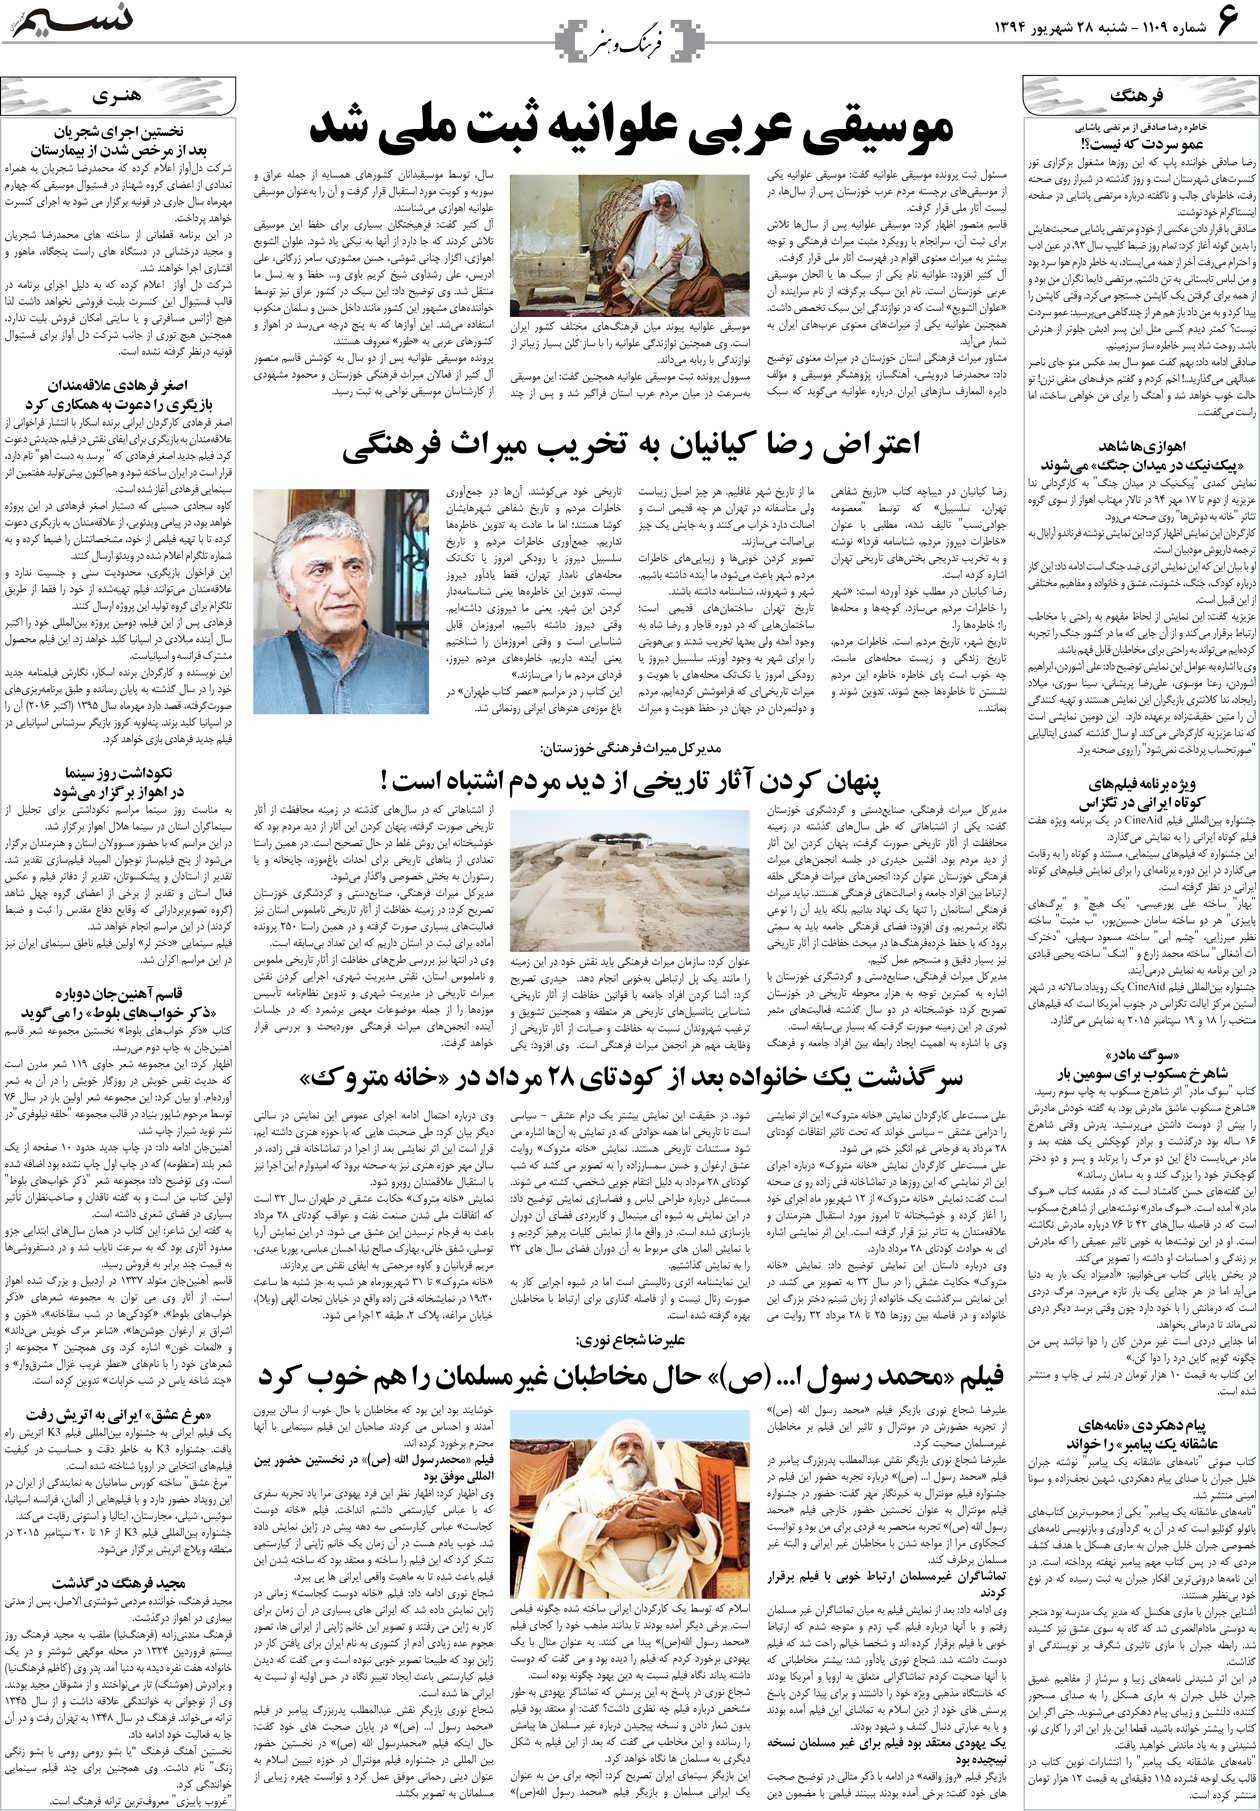 صفحه فرهنگ و هنر روزنامه نسیم شماره 1109